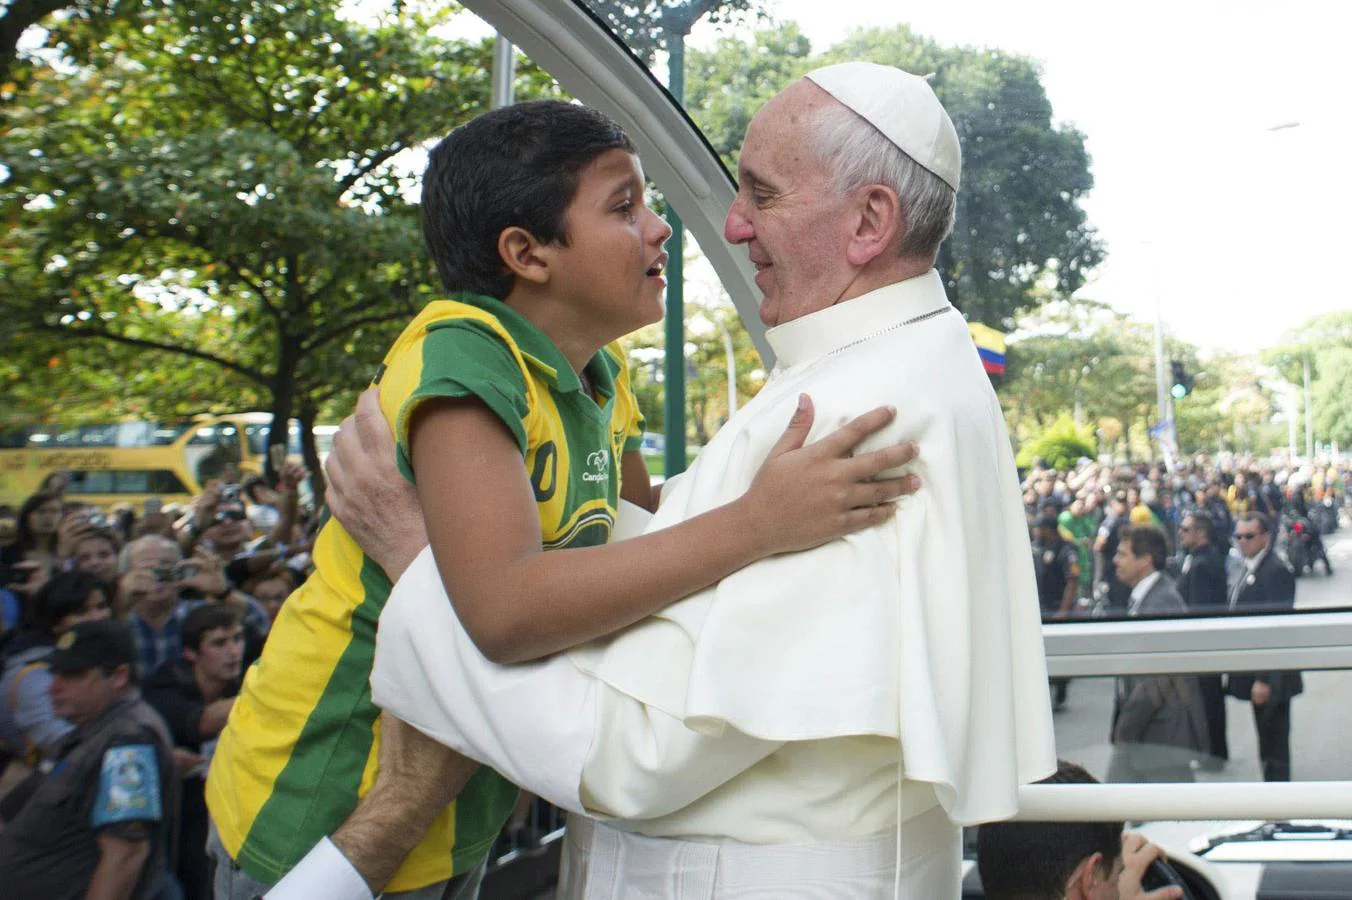 Francisco saludando a un niño a su llegada al parque de Quinta da Boa Vista, en Río de Janeiro, Brasil el 26 de julio de 2013 durante la Jornada Mundial de la Juventud (JMJ). 